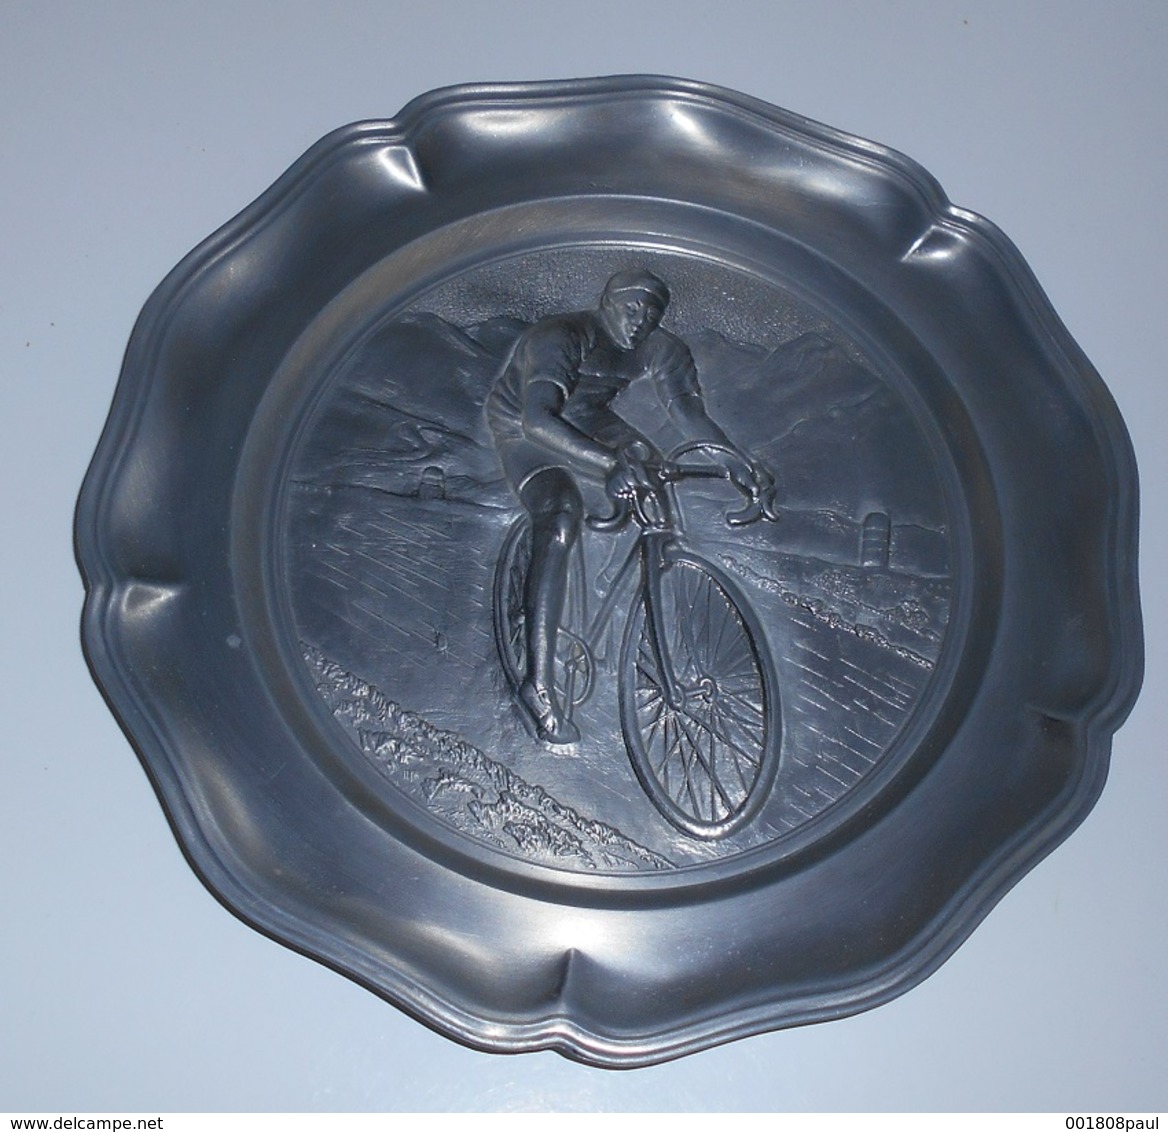 Assiette Décorative En Etains ? : Coureur Cycliste En Relief :: Sports - Vélos - Bicyclettes - Courses - Profil - Tins